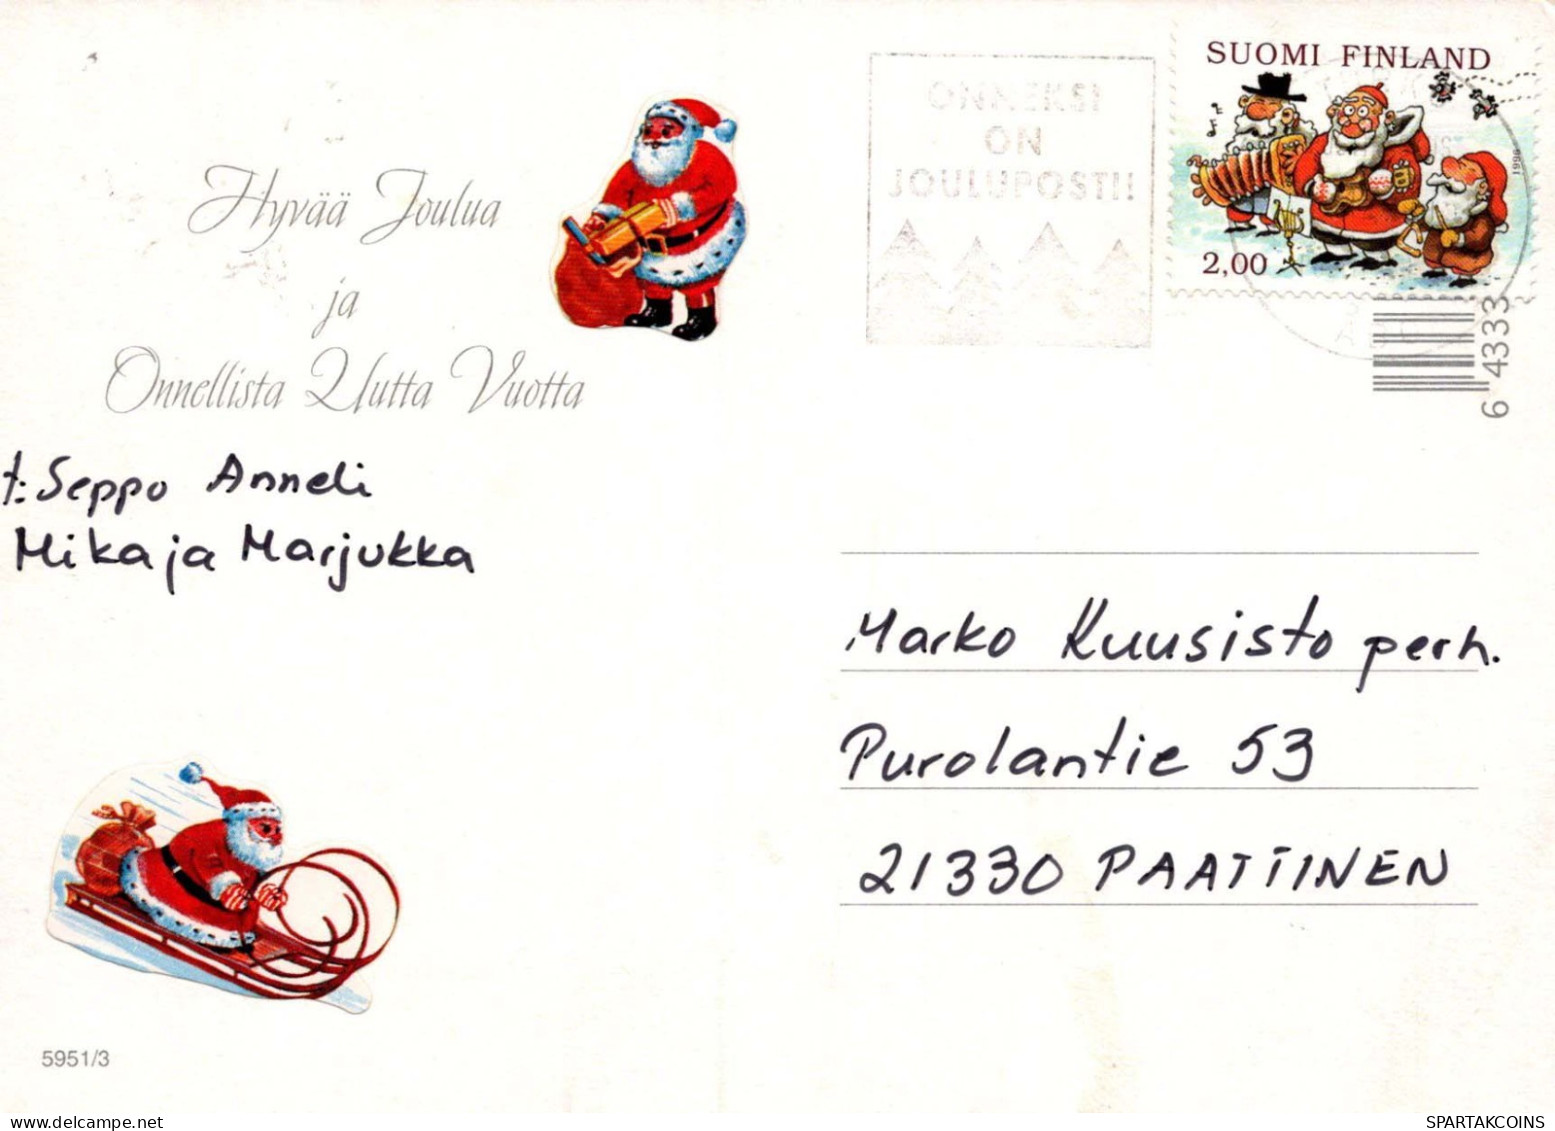 Bonne Année Noël LAPIN Vintage Carte Postale CPSM #PAV260.A - Nouvel An